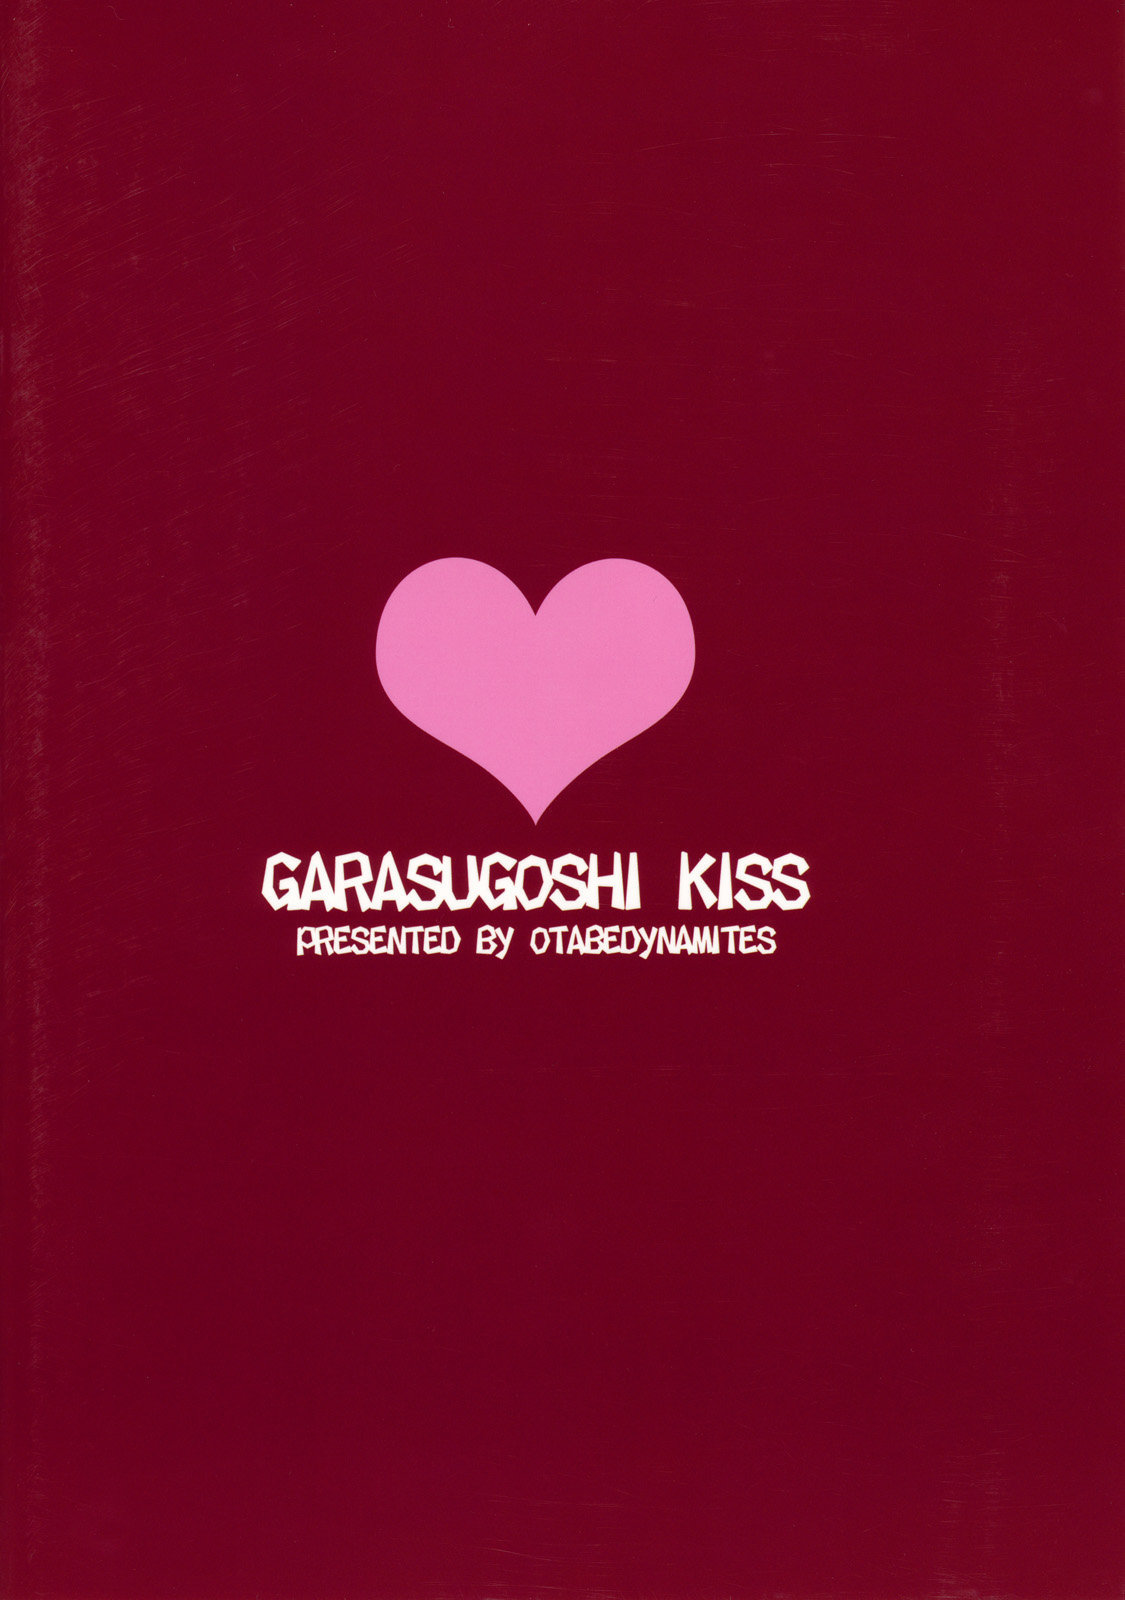 Glass Goshi Kiss - 10